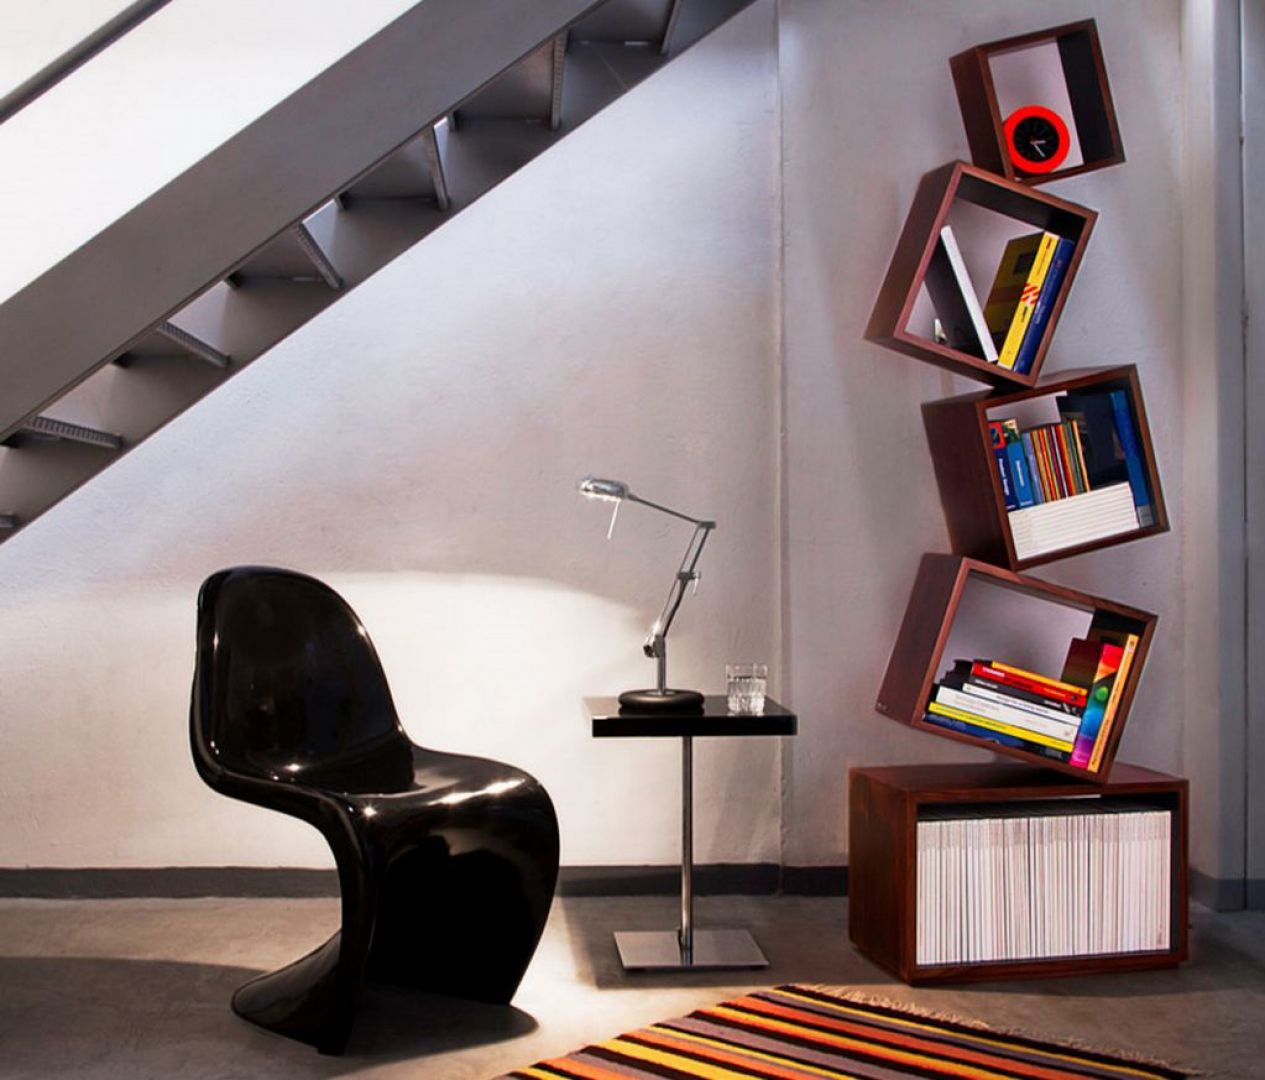 Nietypowa półka na książki MALAGANA – EQUILIBRUM, projektu Alejandro Gomez
Fot. Malagana Design